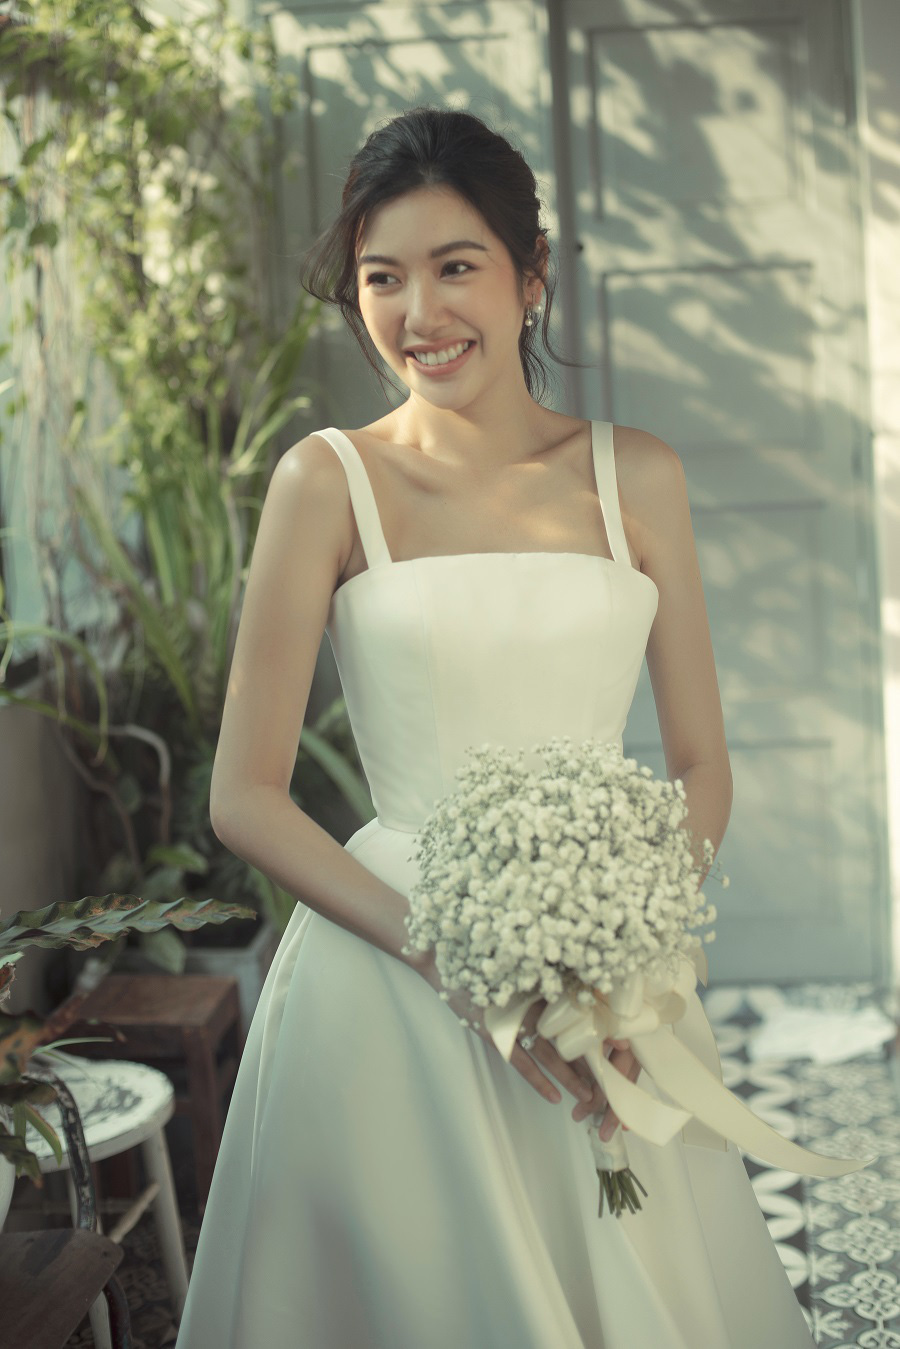 Á hậu Thúy Vân mặc váy cưới xinh đẹp như công chúa, dự định tổ chức tiệc cưới riêng tư trong 2 tháng tới - Ảnh 3.